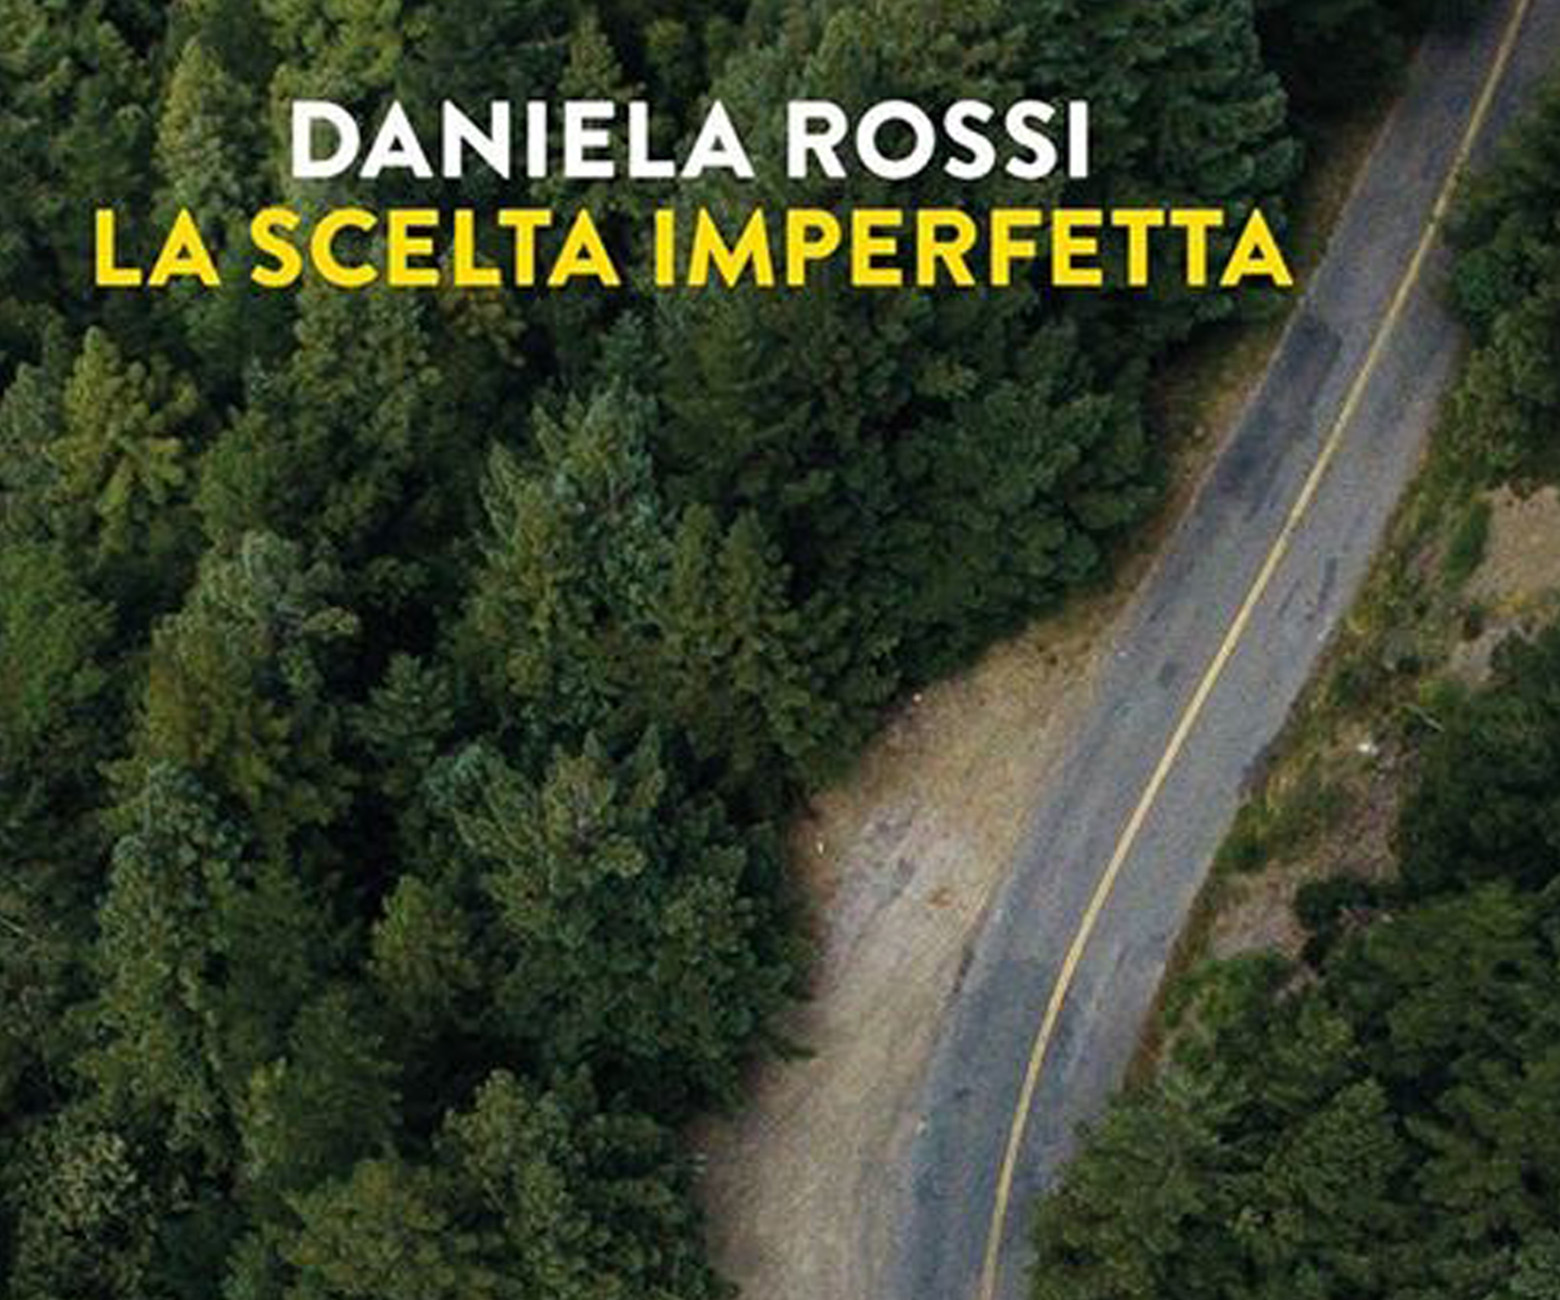 Presentazione del libro LA SCELTA IMPERFETTA di Daniela Rossi